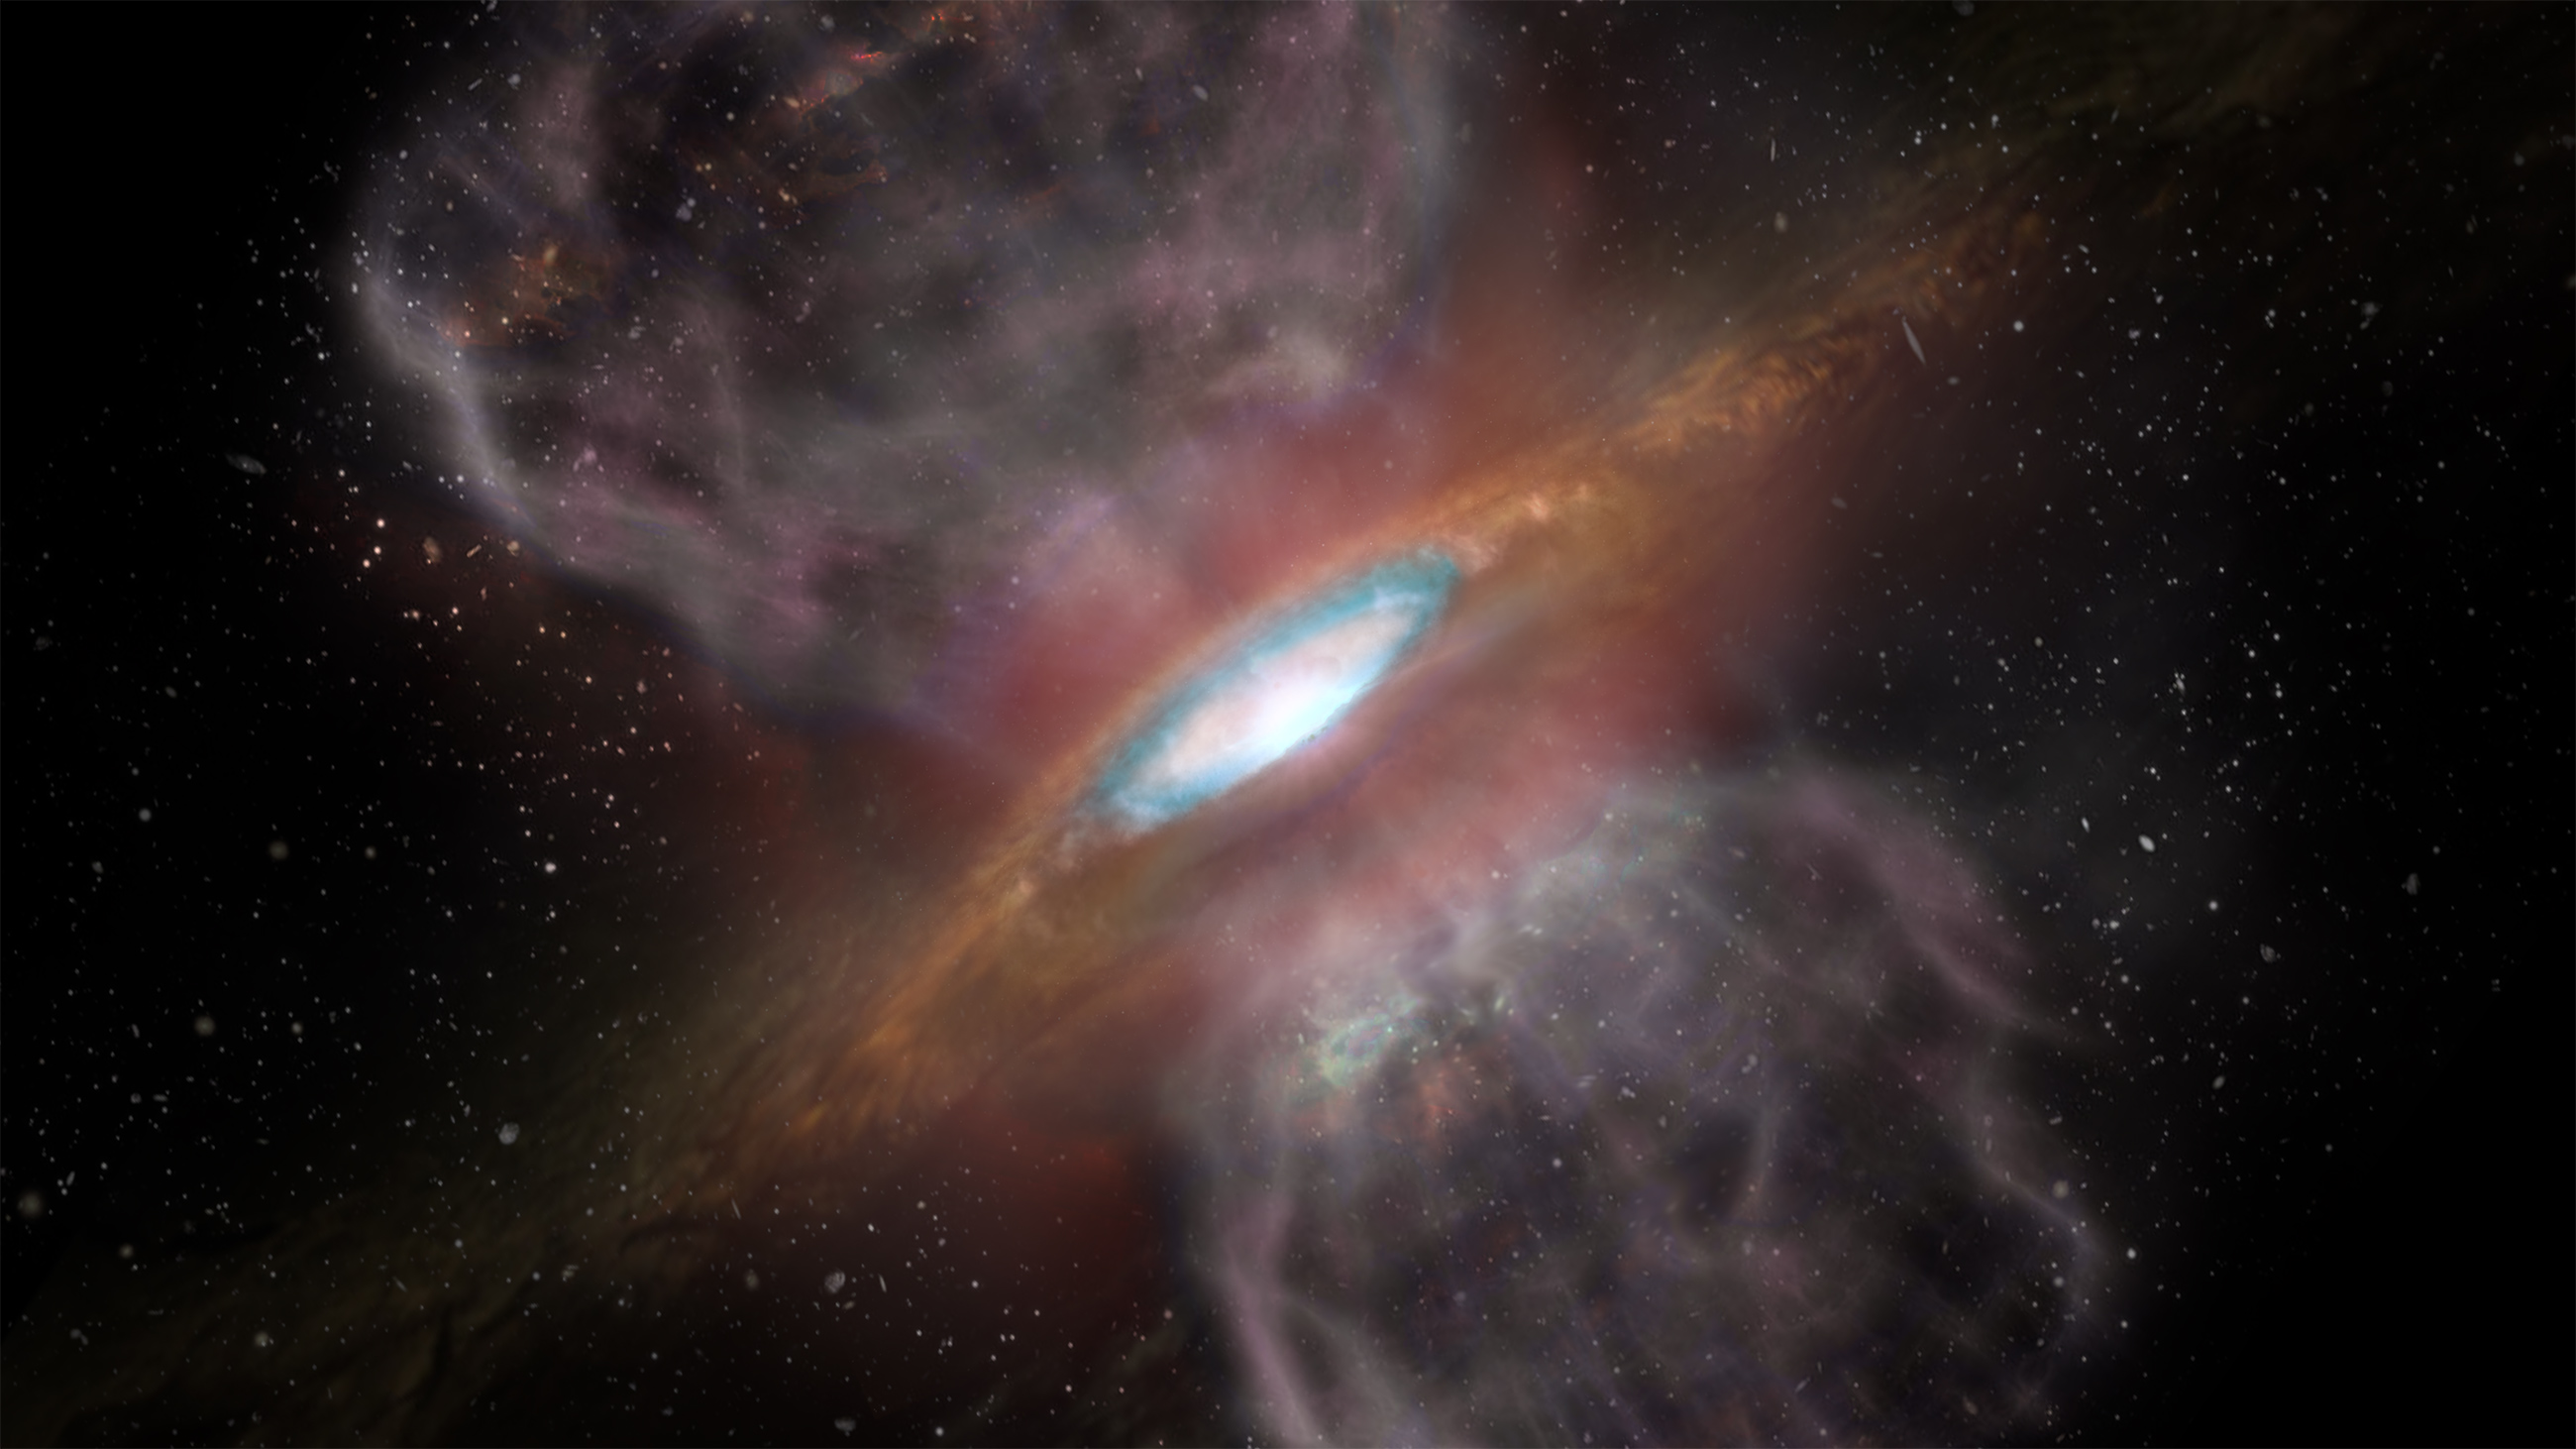 Representación artística de Orion Source I, una joven estrella masiva situada a unos 1.500 años luz de distancia. Las nuevas observaciones de ALMA detectaron un anillo de sal alrededor de la estrella compuesto de cloruro de sodio, es decir, sal de mesa. Es la primera vez que se detectan sales de cualquier tipo relacionadas con una joven estrella. La zona azul (a cerca de 1/3 del radio desde el centro del disco) es la zona donde ALMA detectó el “brillo” de las sales en longitudes de onda milimétricas. Créditos: NRAO/AUI/NSF, S. Dagnello